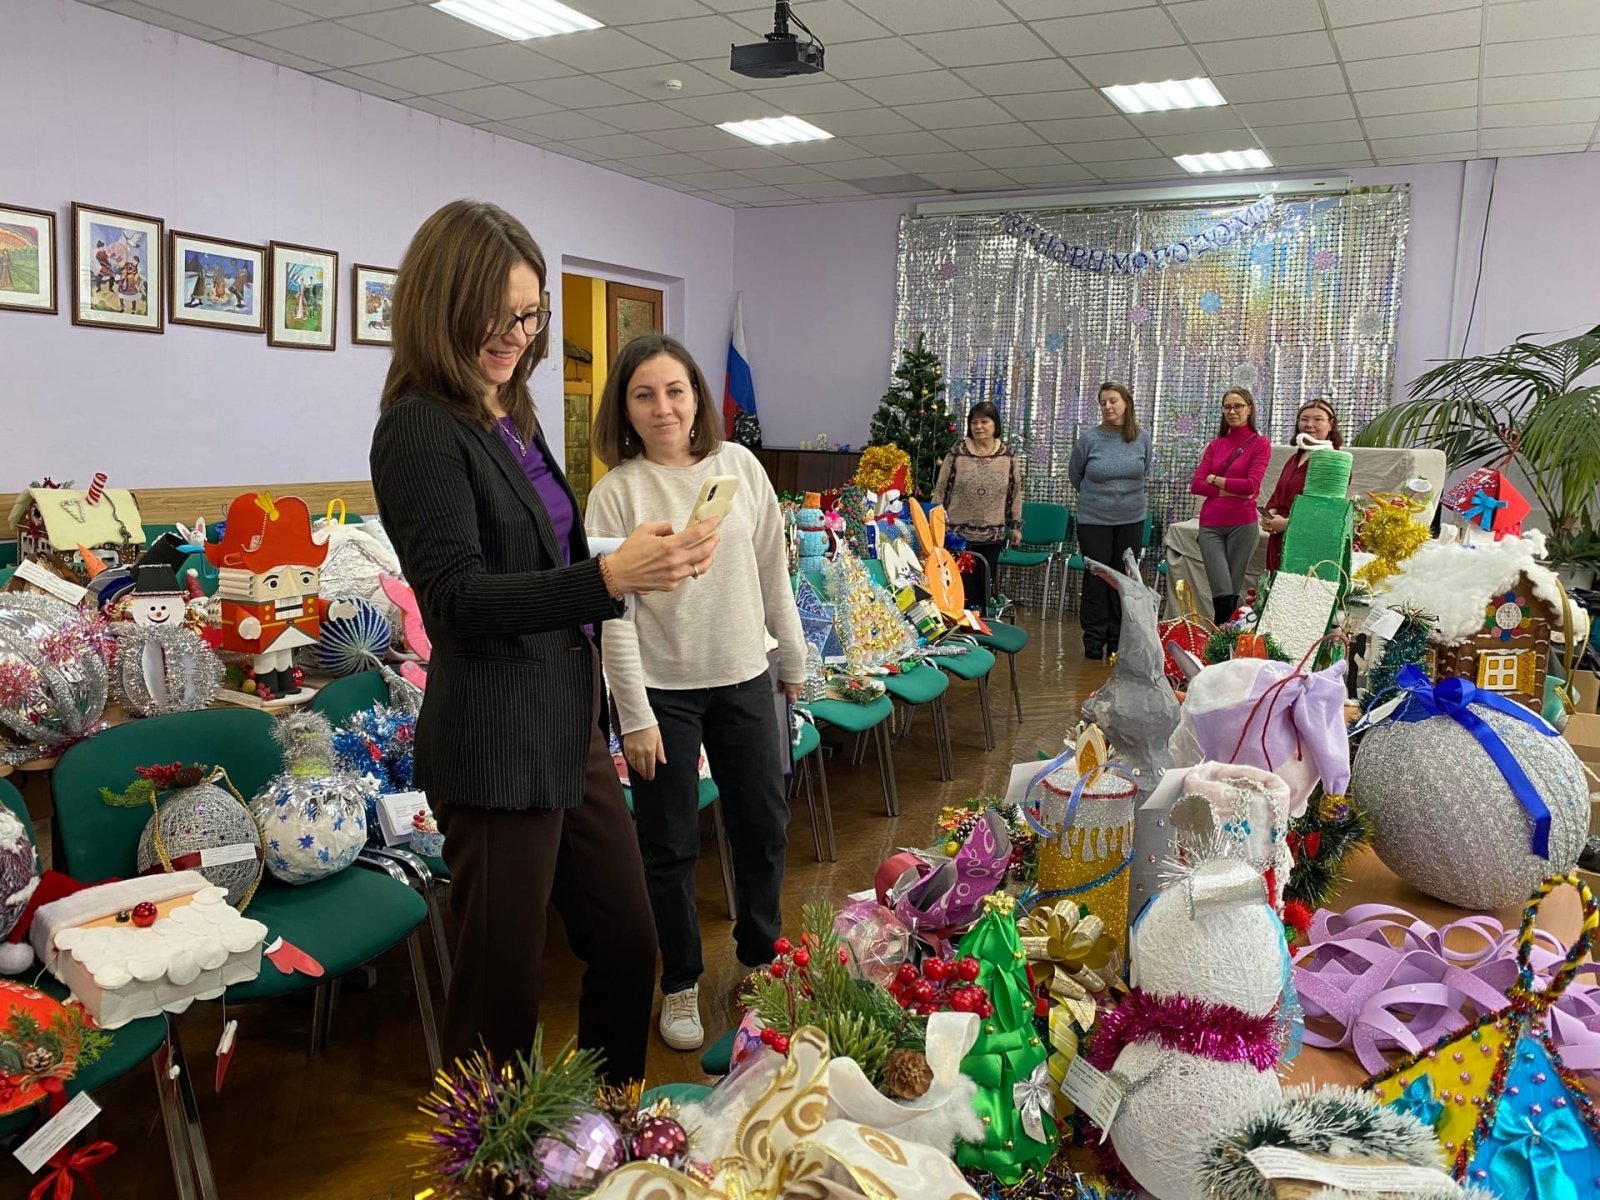 Ежегодный конкурс «Танец елочных игрушек» проходит в Пушкино 